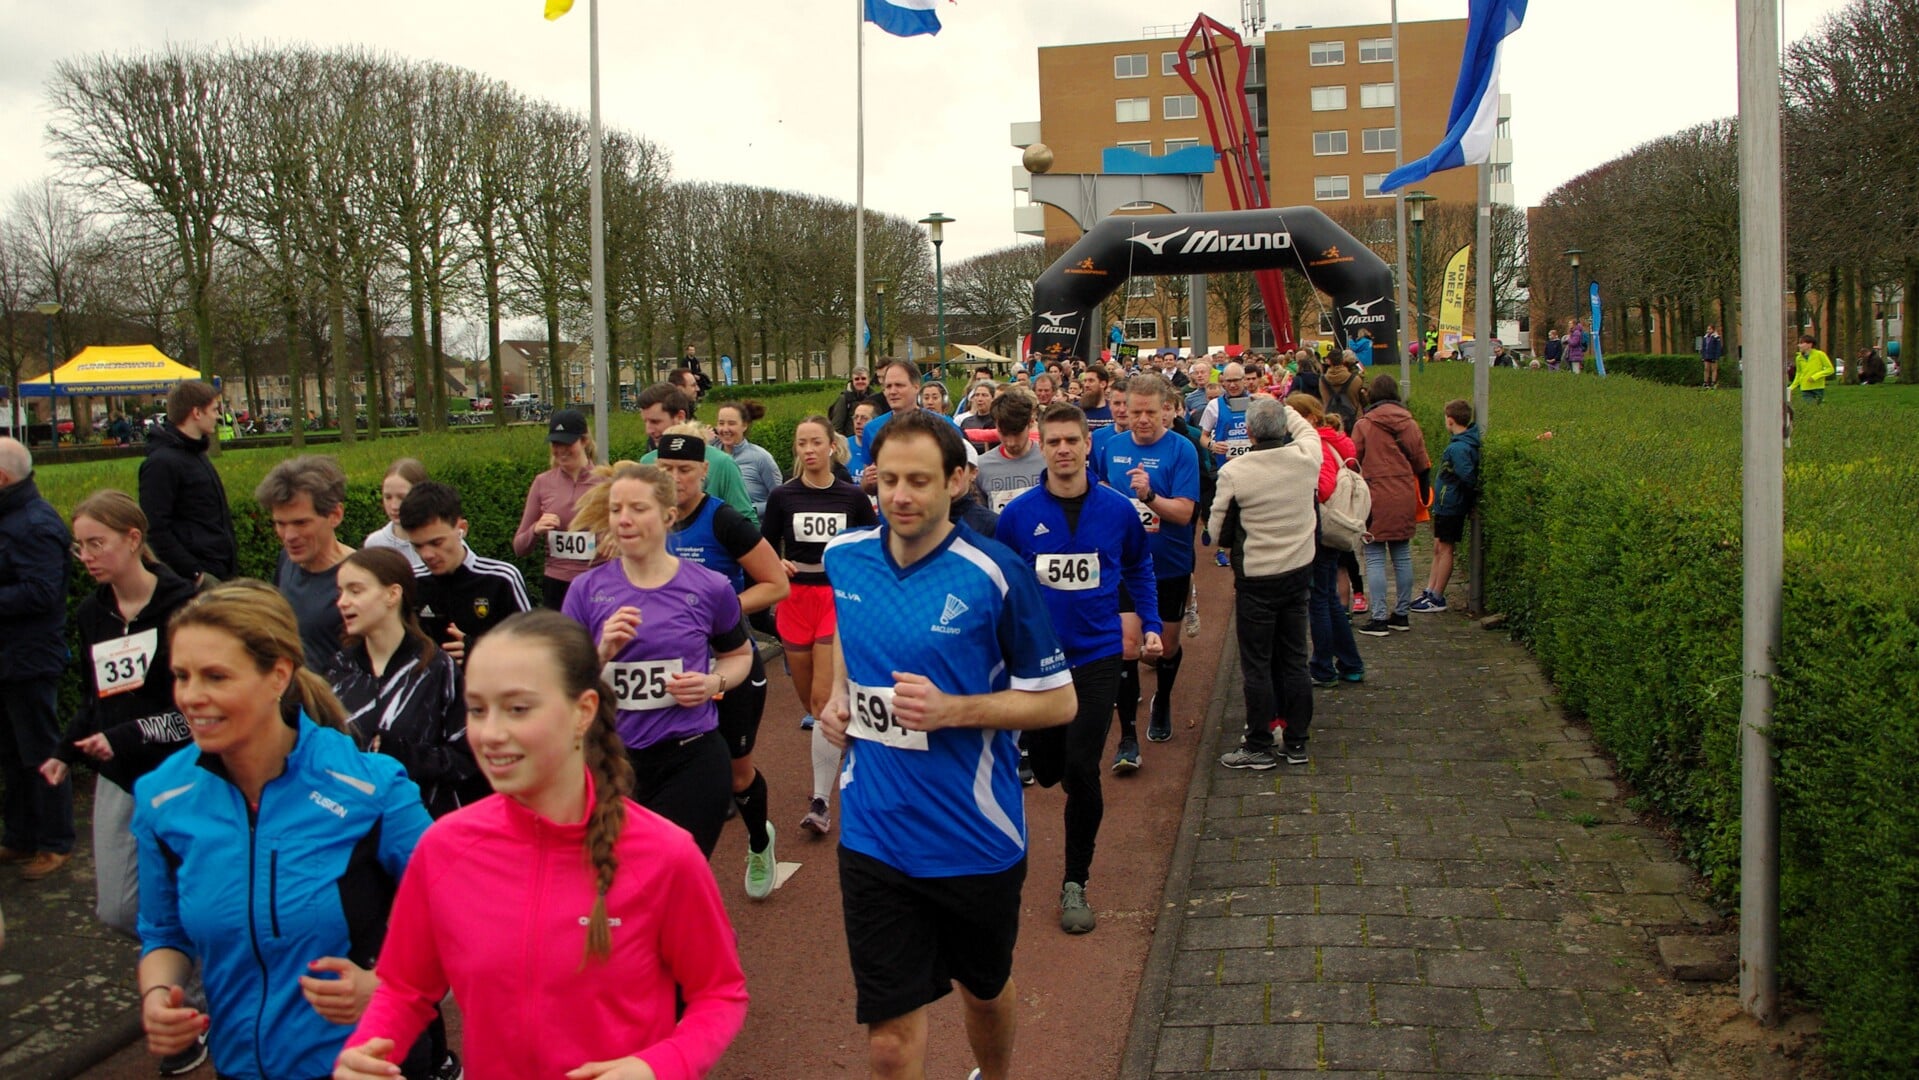 De loop kende een recordaantal deelnemers. | Foto Willemien Timmers